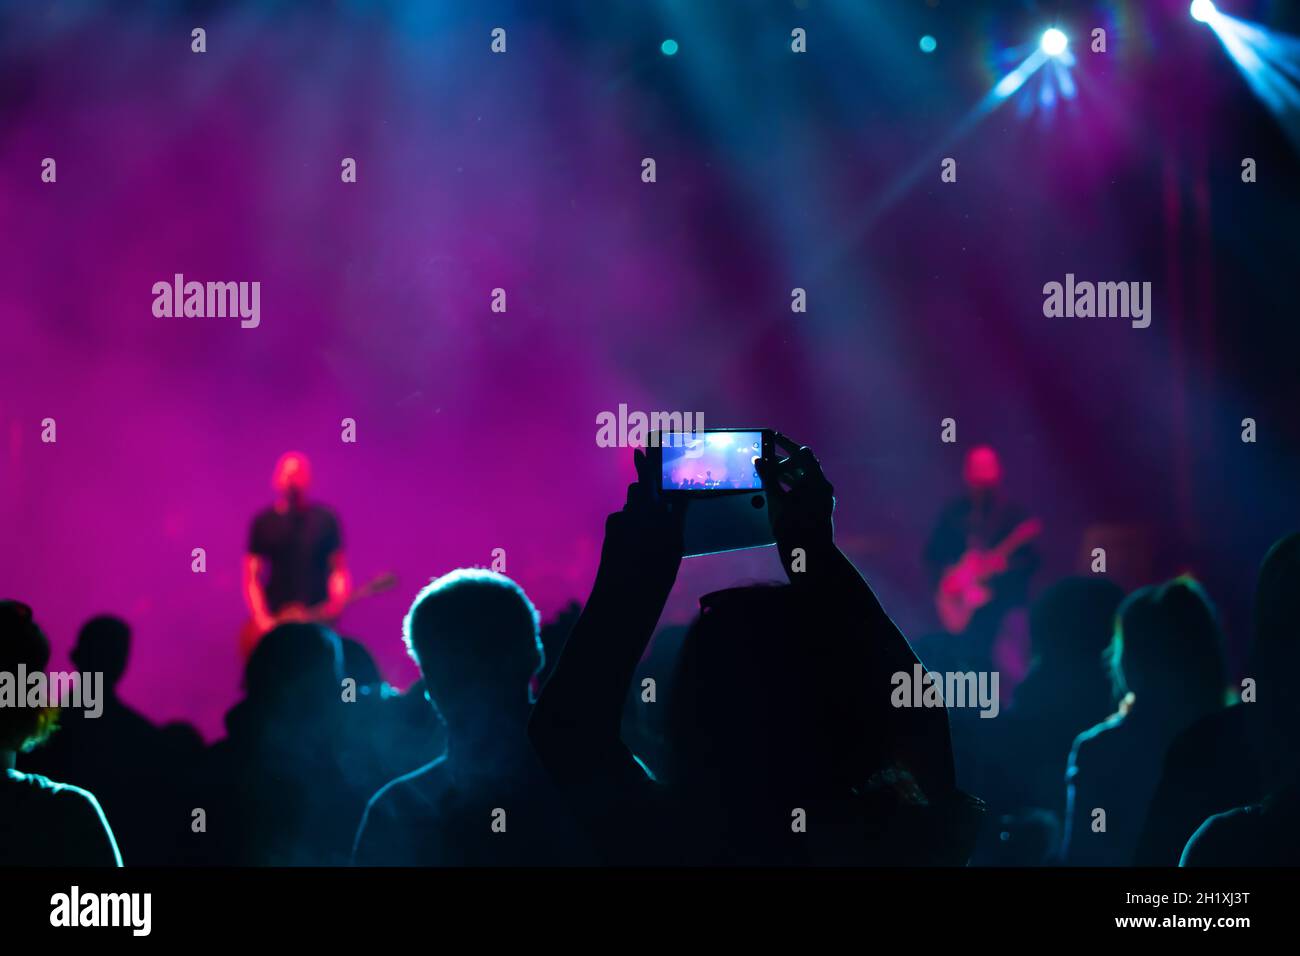 Foule au concert - foule dans bright colorful stage lights Banque D'Images